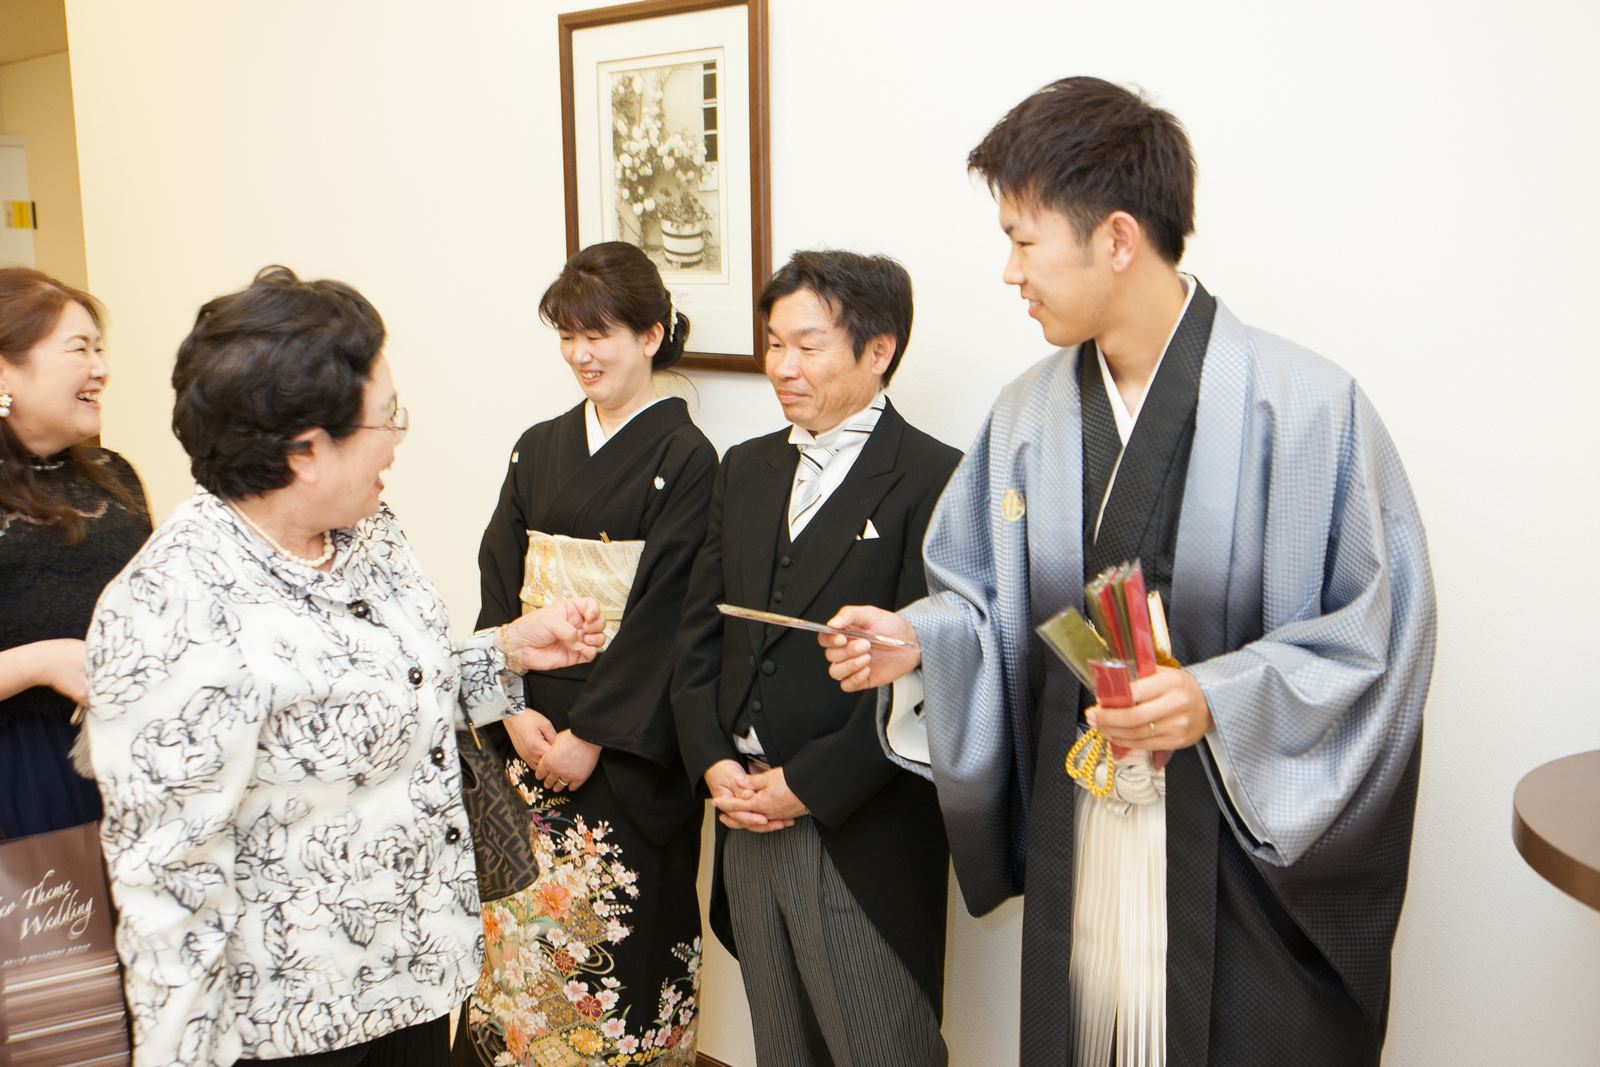 徳島市の結婚式場ブランアンジュで新郎新婦様からゲスト全員に感謝のメッセージと共にプチギフトを手渡し